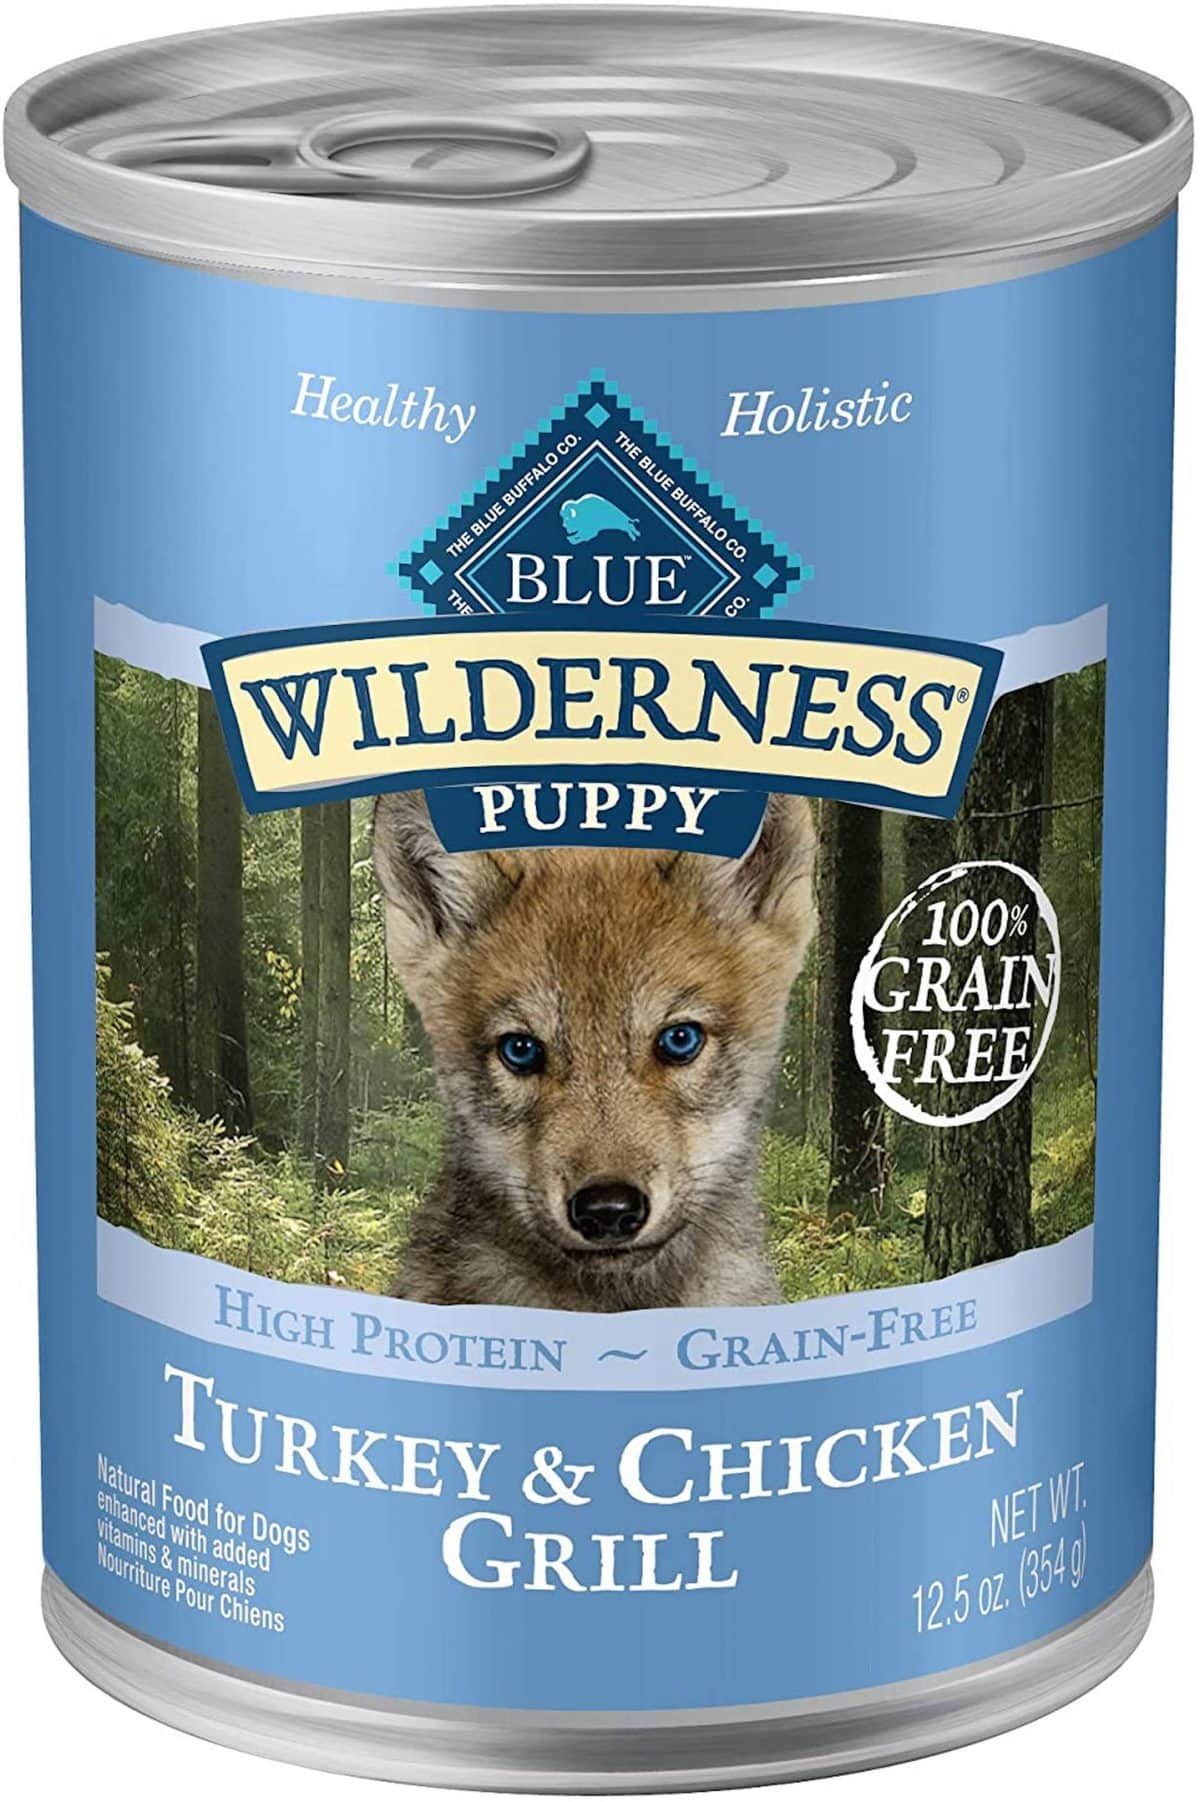 Blue Wilderness Turkey and Chillen Grill